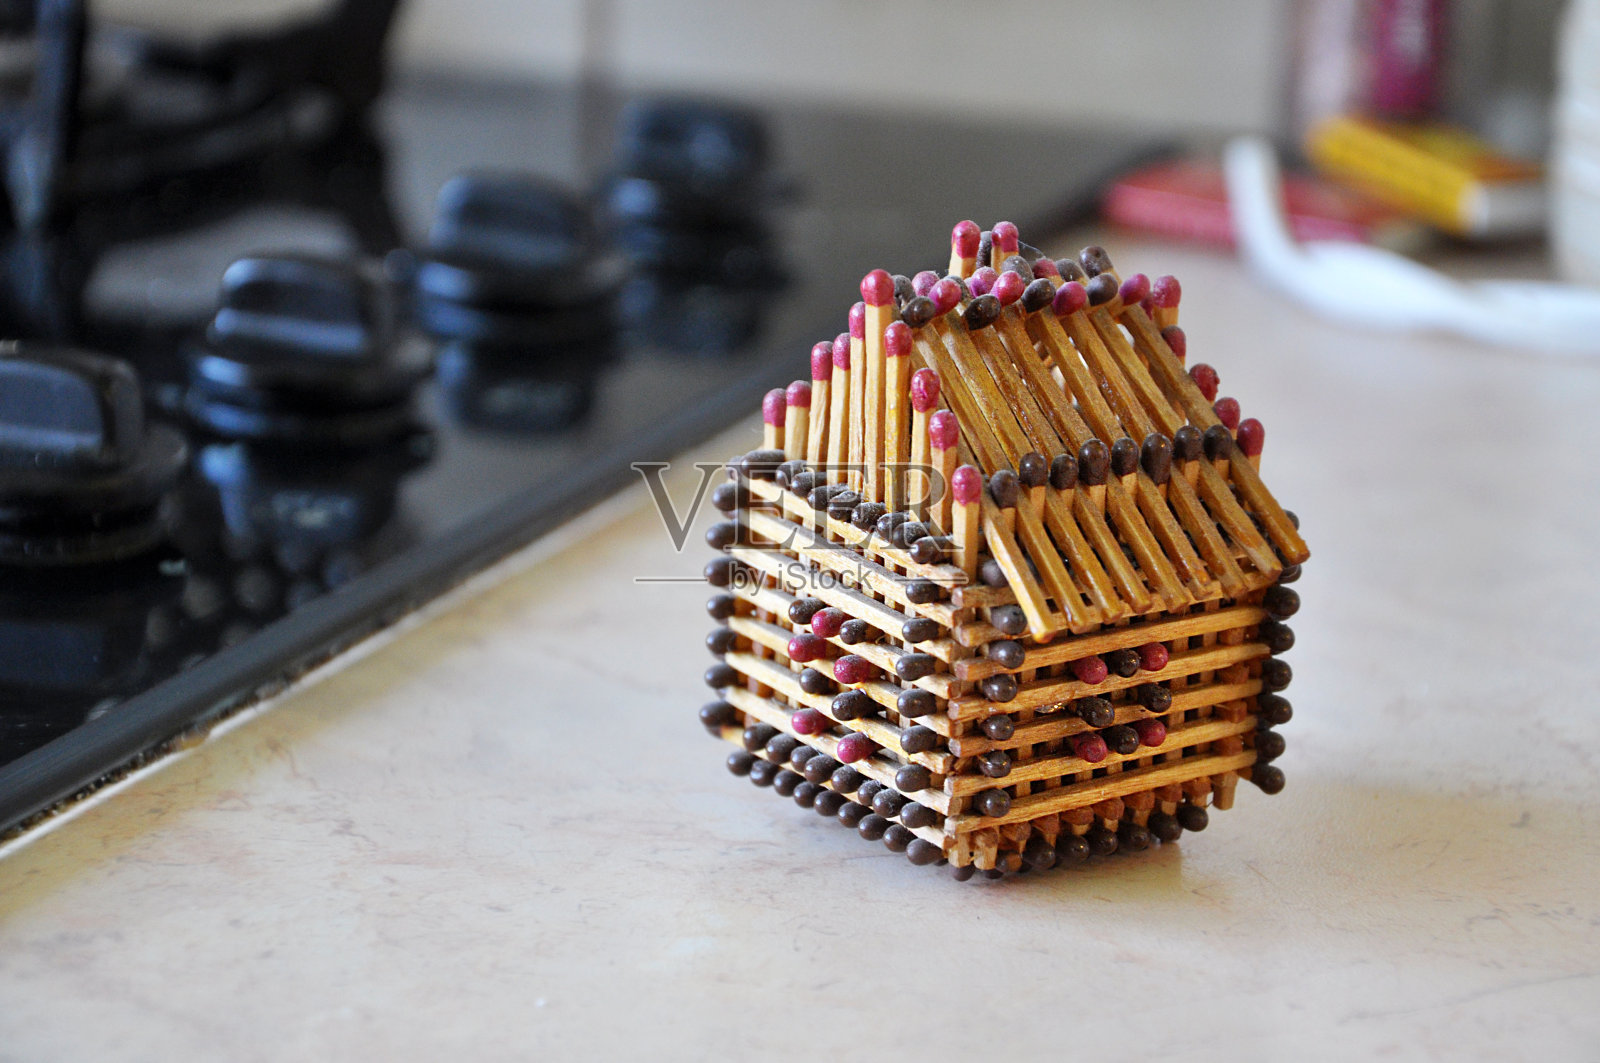 用火柴做的房子模型。——图片照片摄影图片